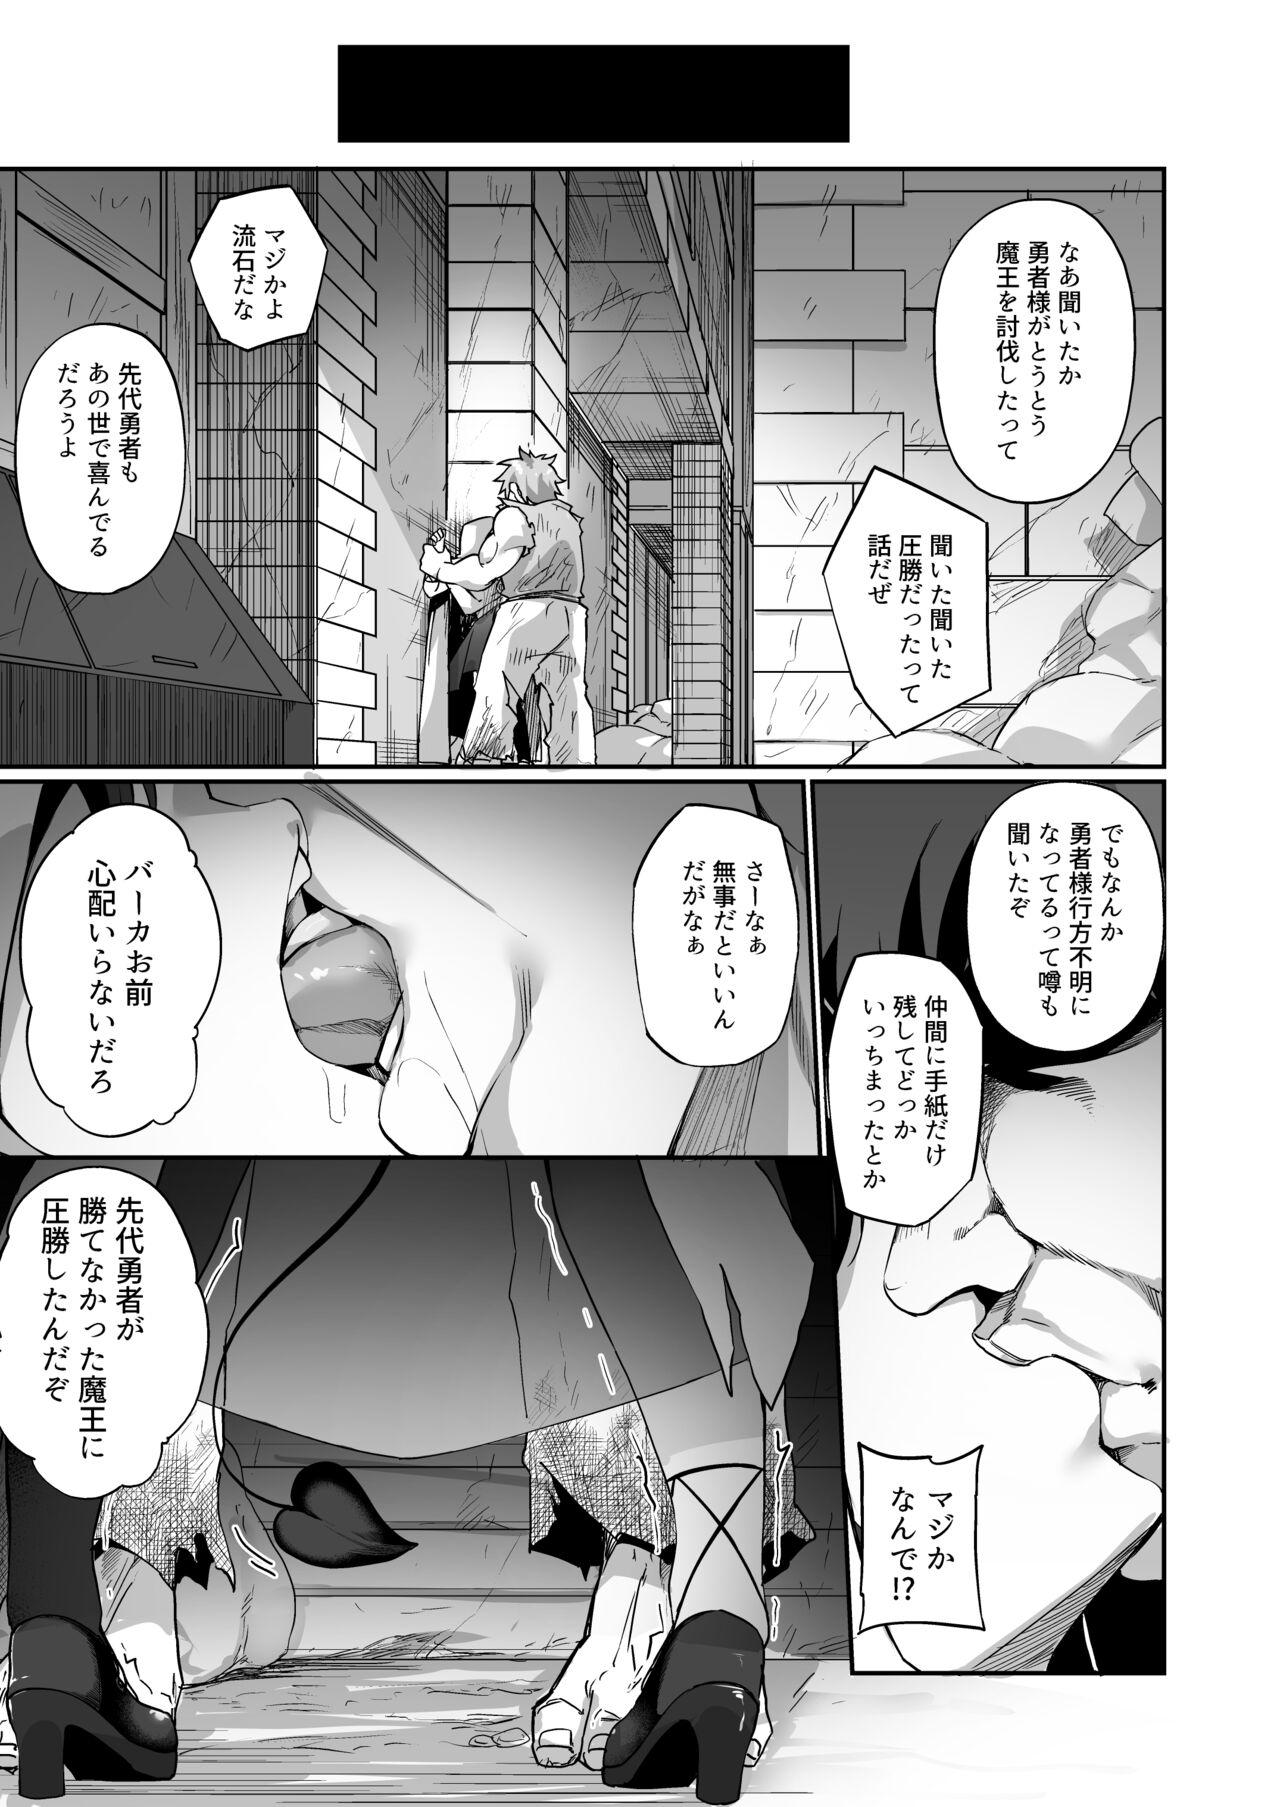 Rubdown Maou ni idonda yusha ga sakyubasu ni ochite iku hanashi - Original Blowing - Page 5